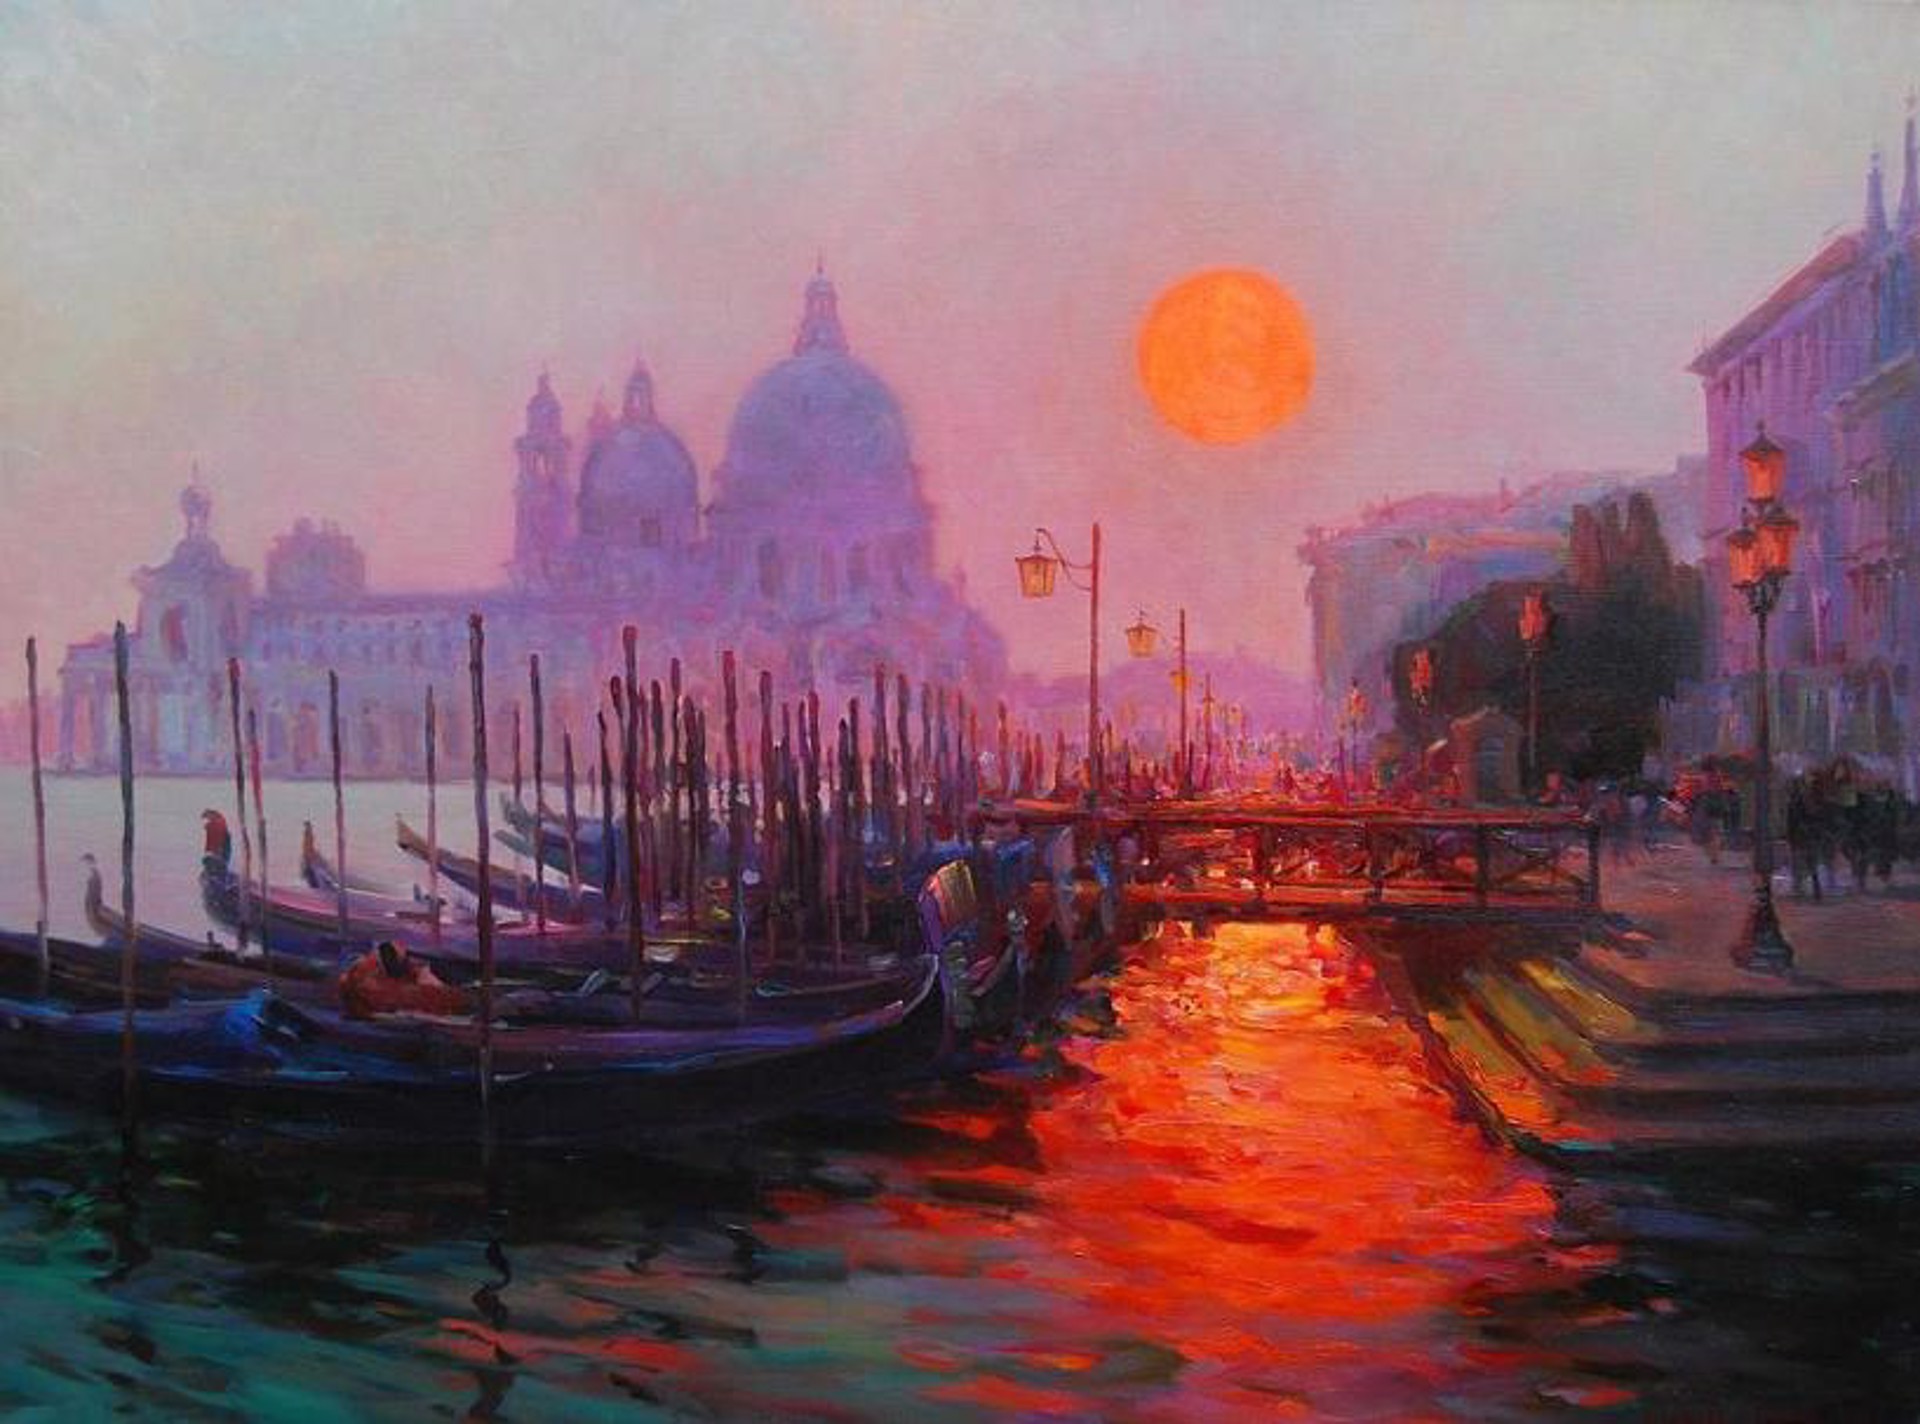 Setting Sun, Venice by Evgeny & Lydia Baranov